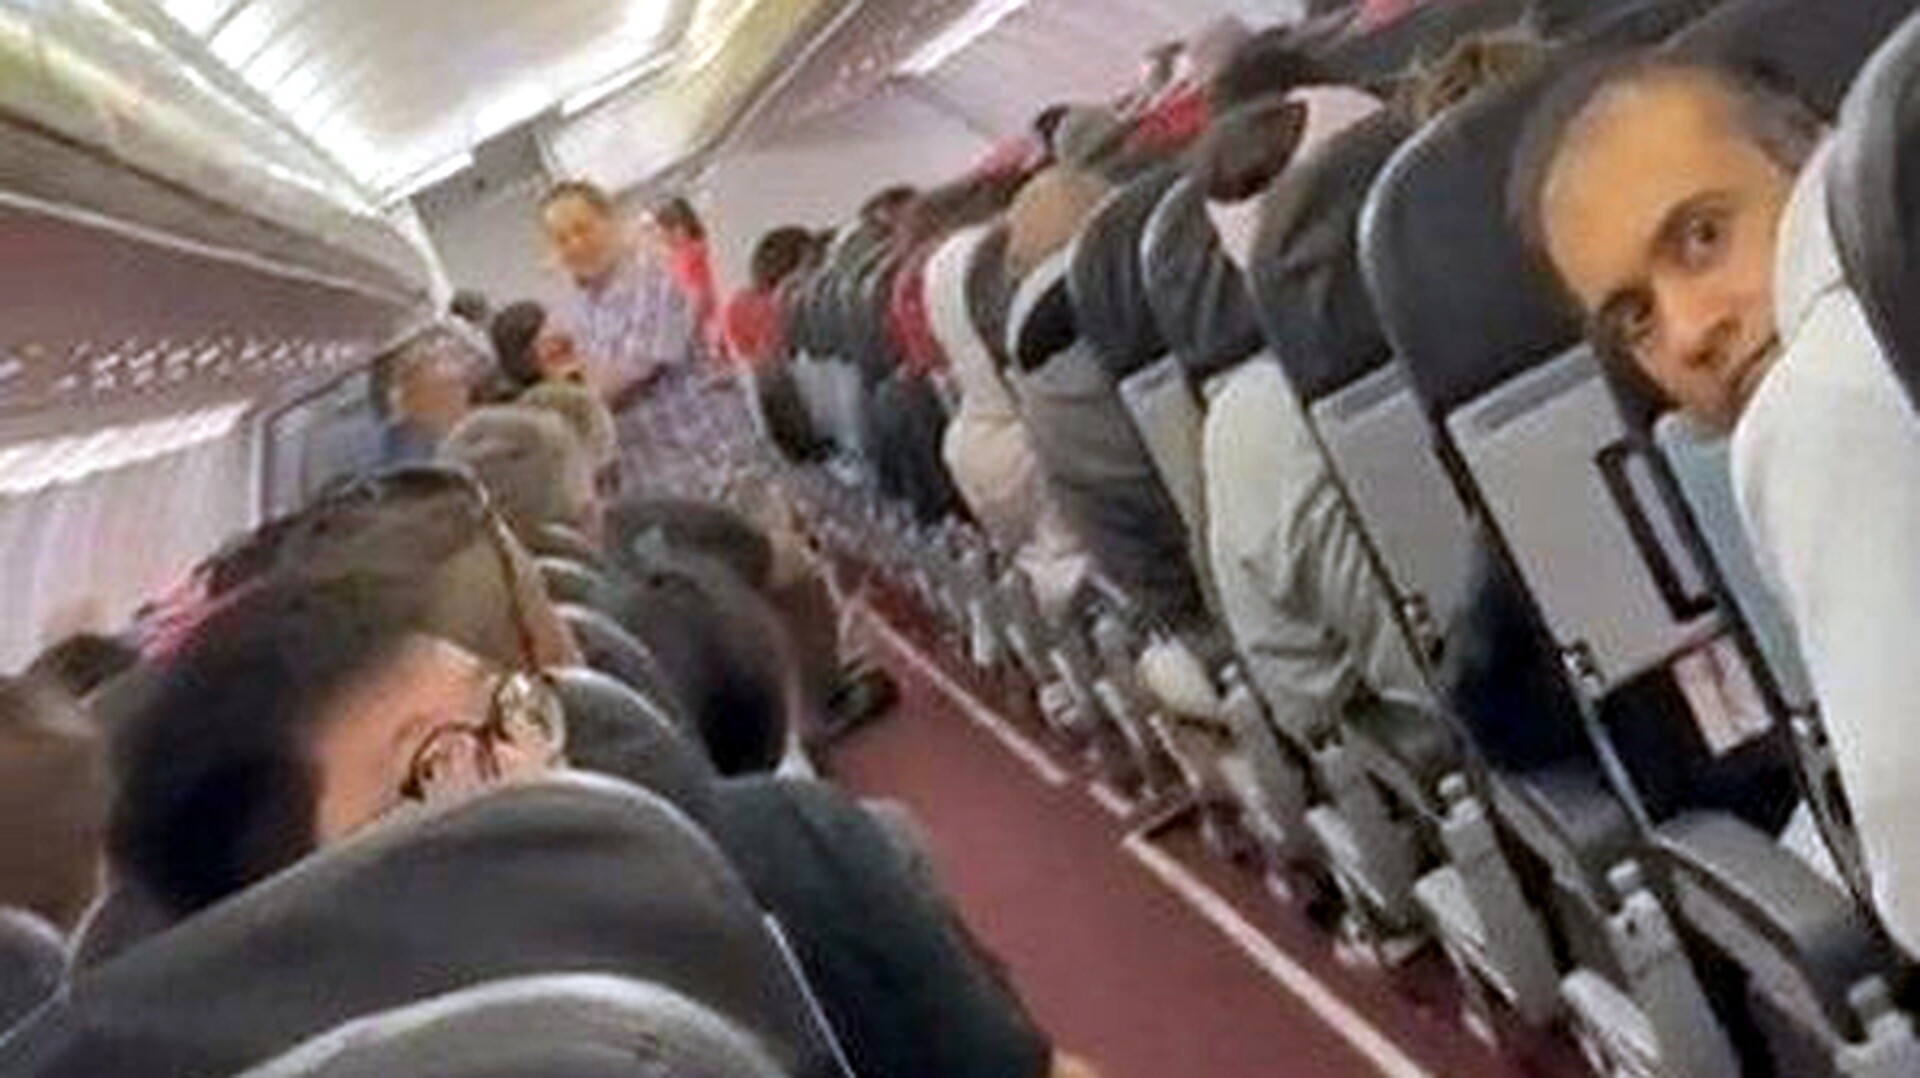 Πανικός σε πτήση από διακοπή ρεύματος – Οι επιβάτες ούρλιαζαν και πάλευαν να αναπνεύσουν